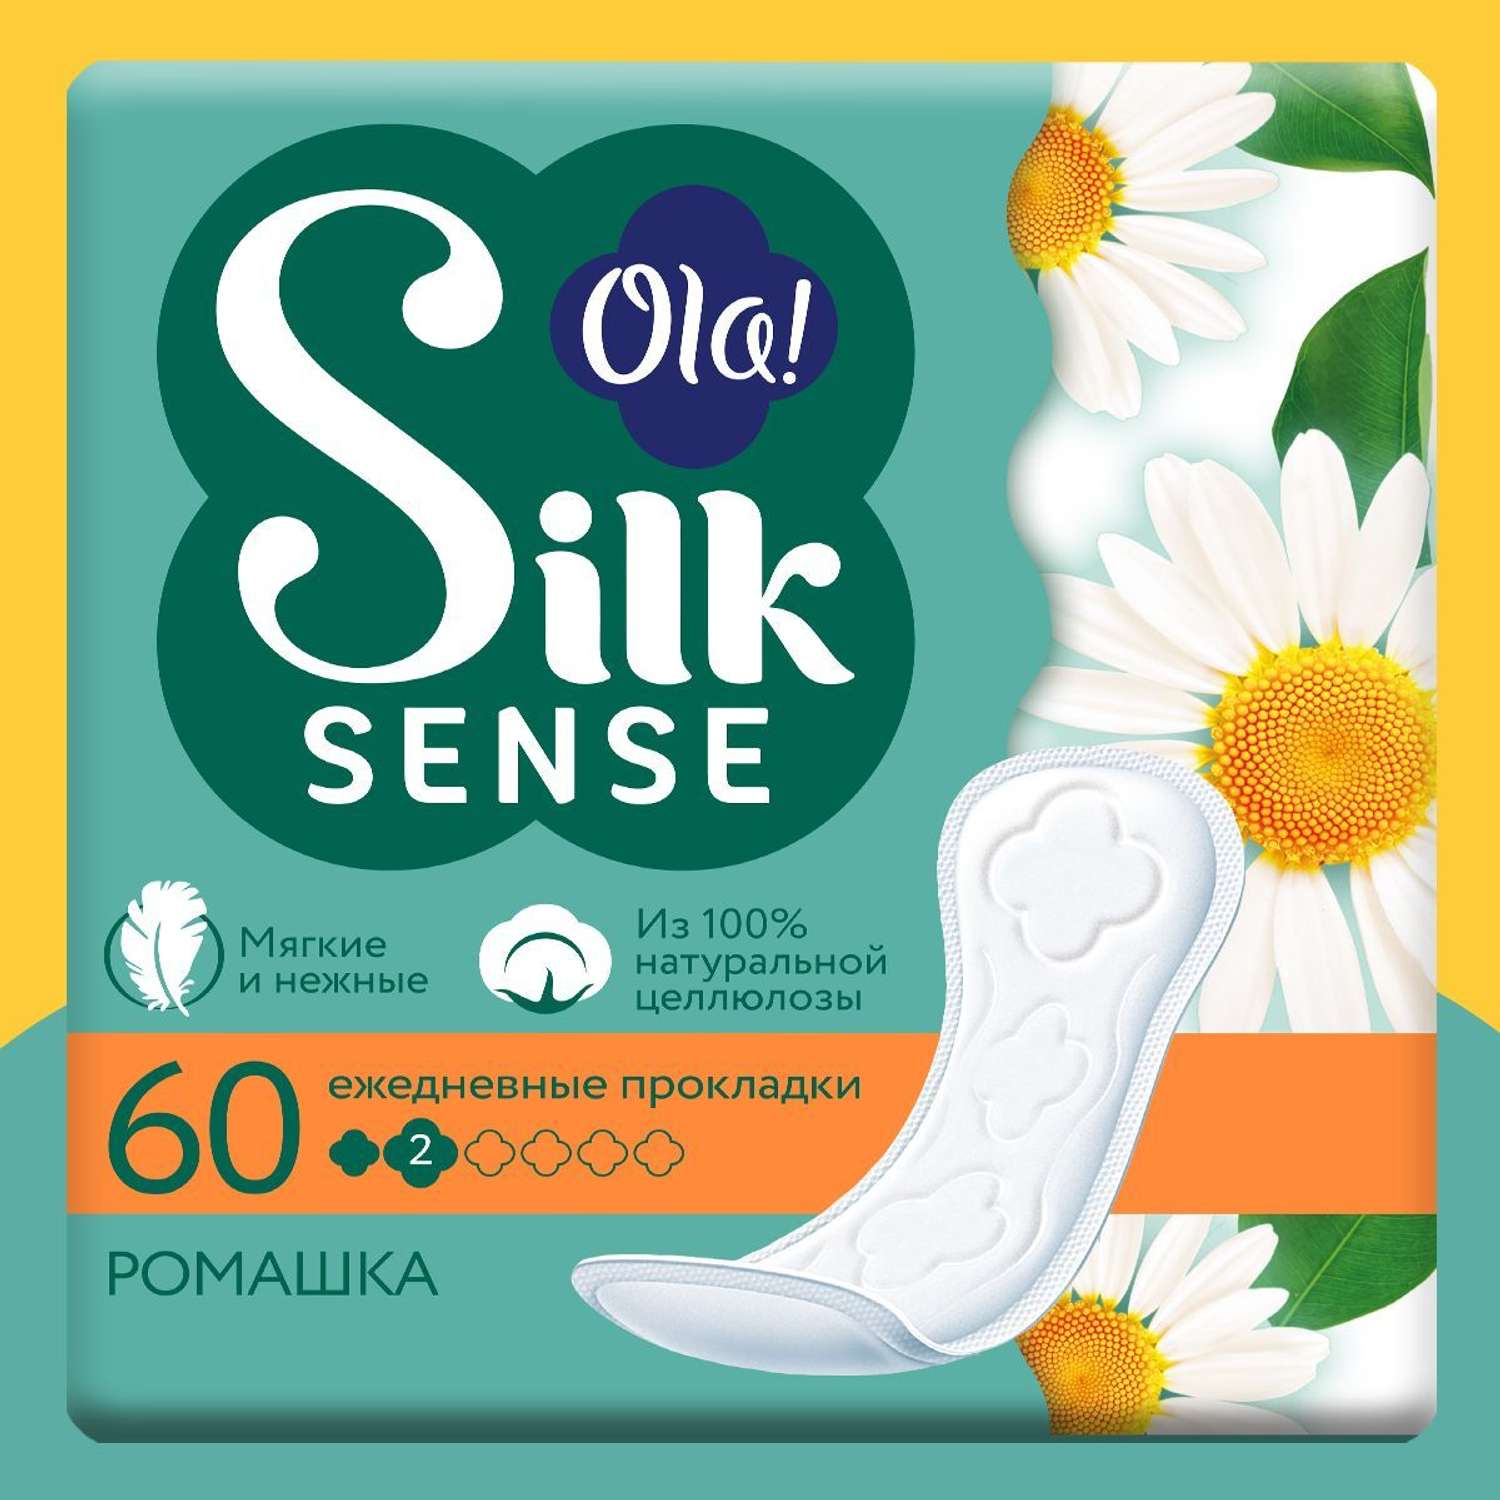 Ежедневные прокладки Ola! Silk Sense мягкие аромат Ромашка 180 шт 3уп по 60 шт - фото 2